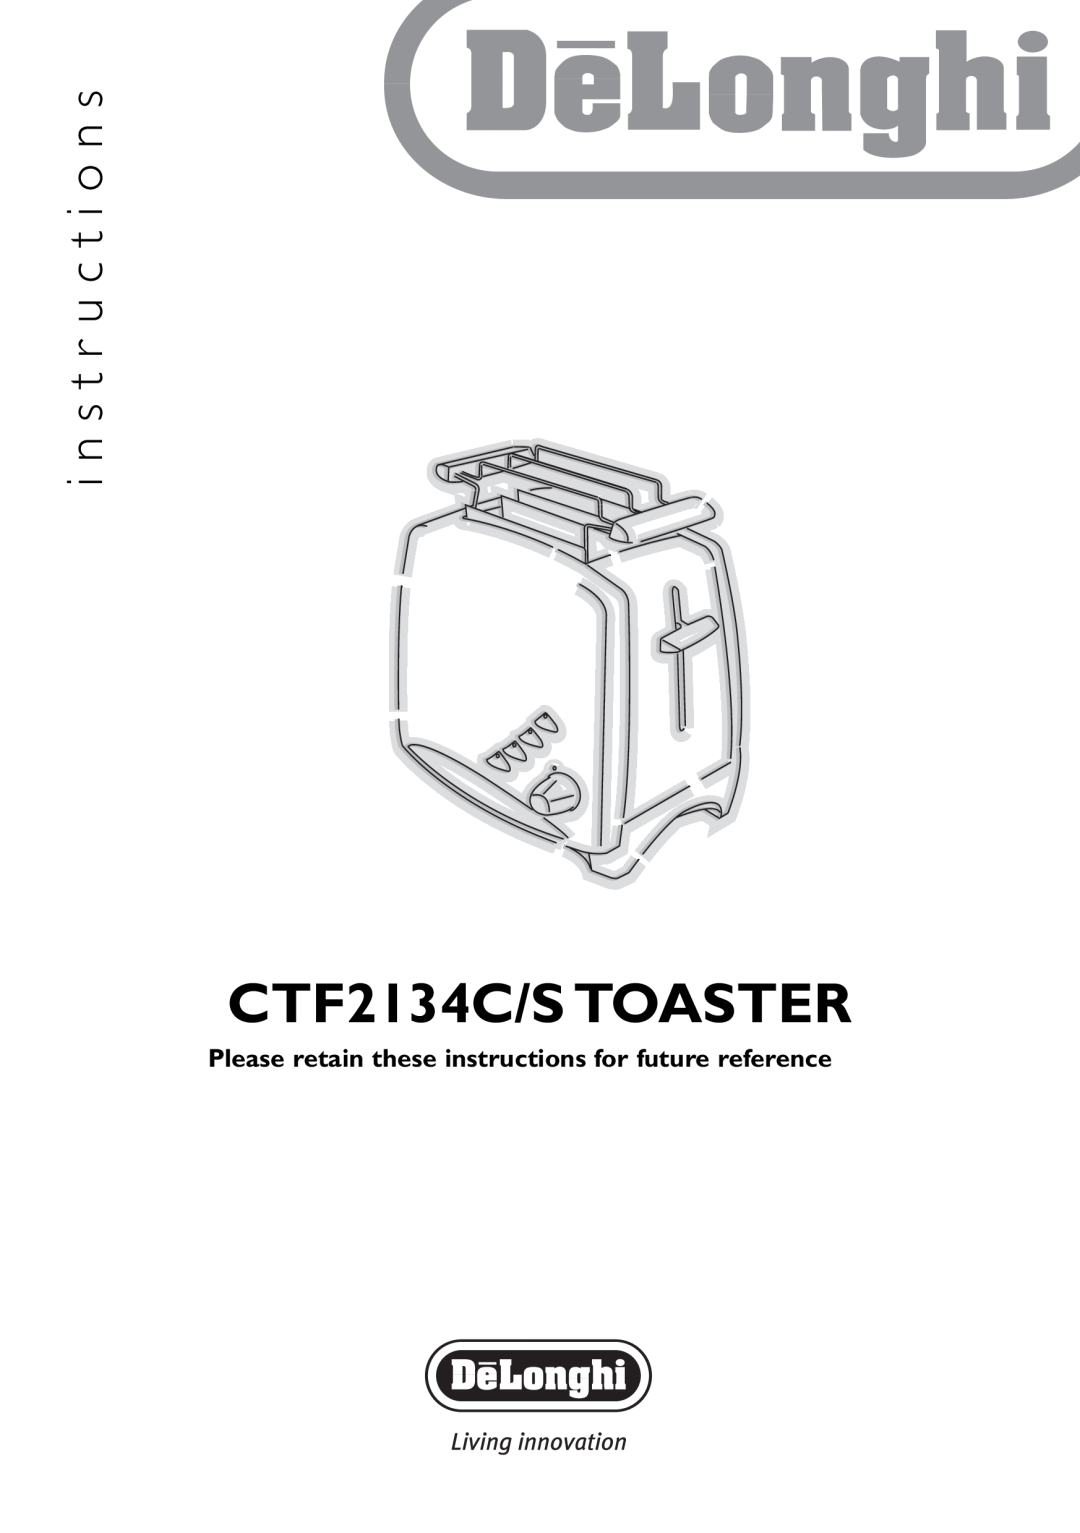 DeLonghi manual CTF2134C/S TOASTER, i n s t r u c t i o n s 